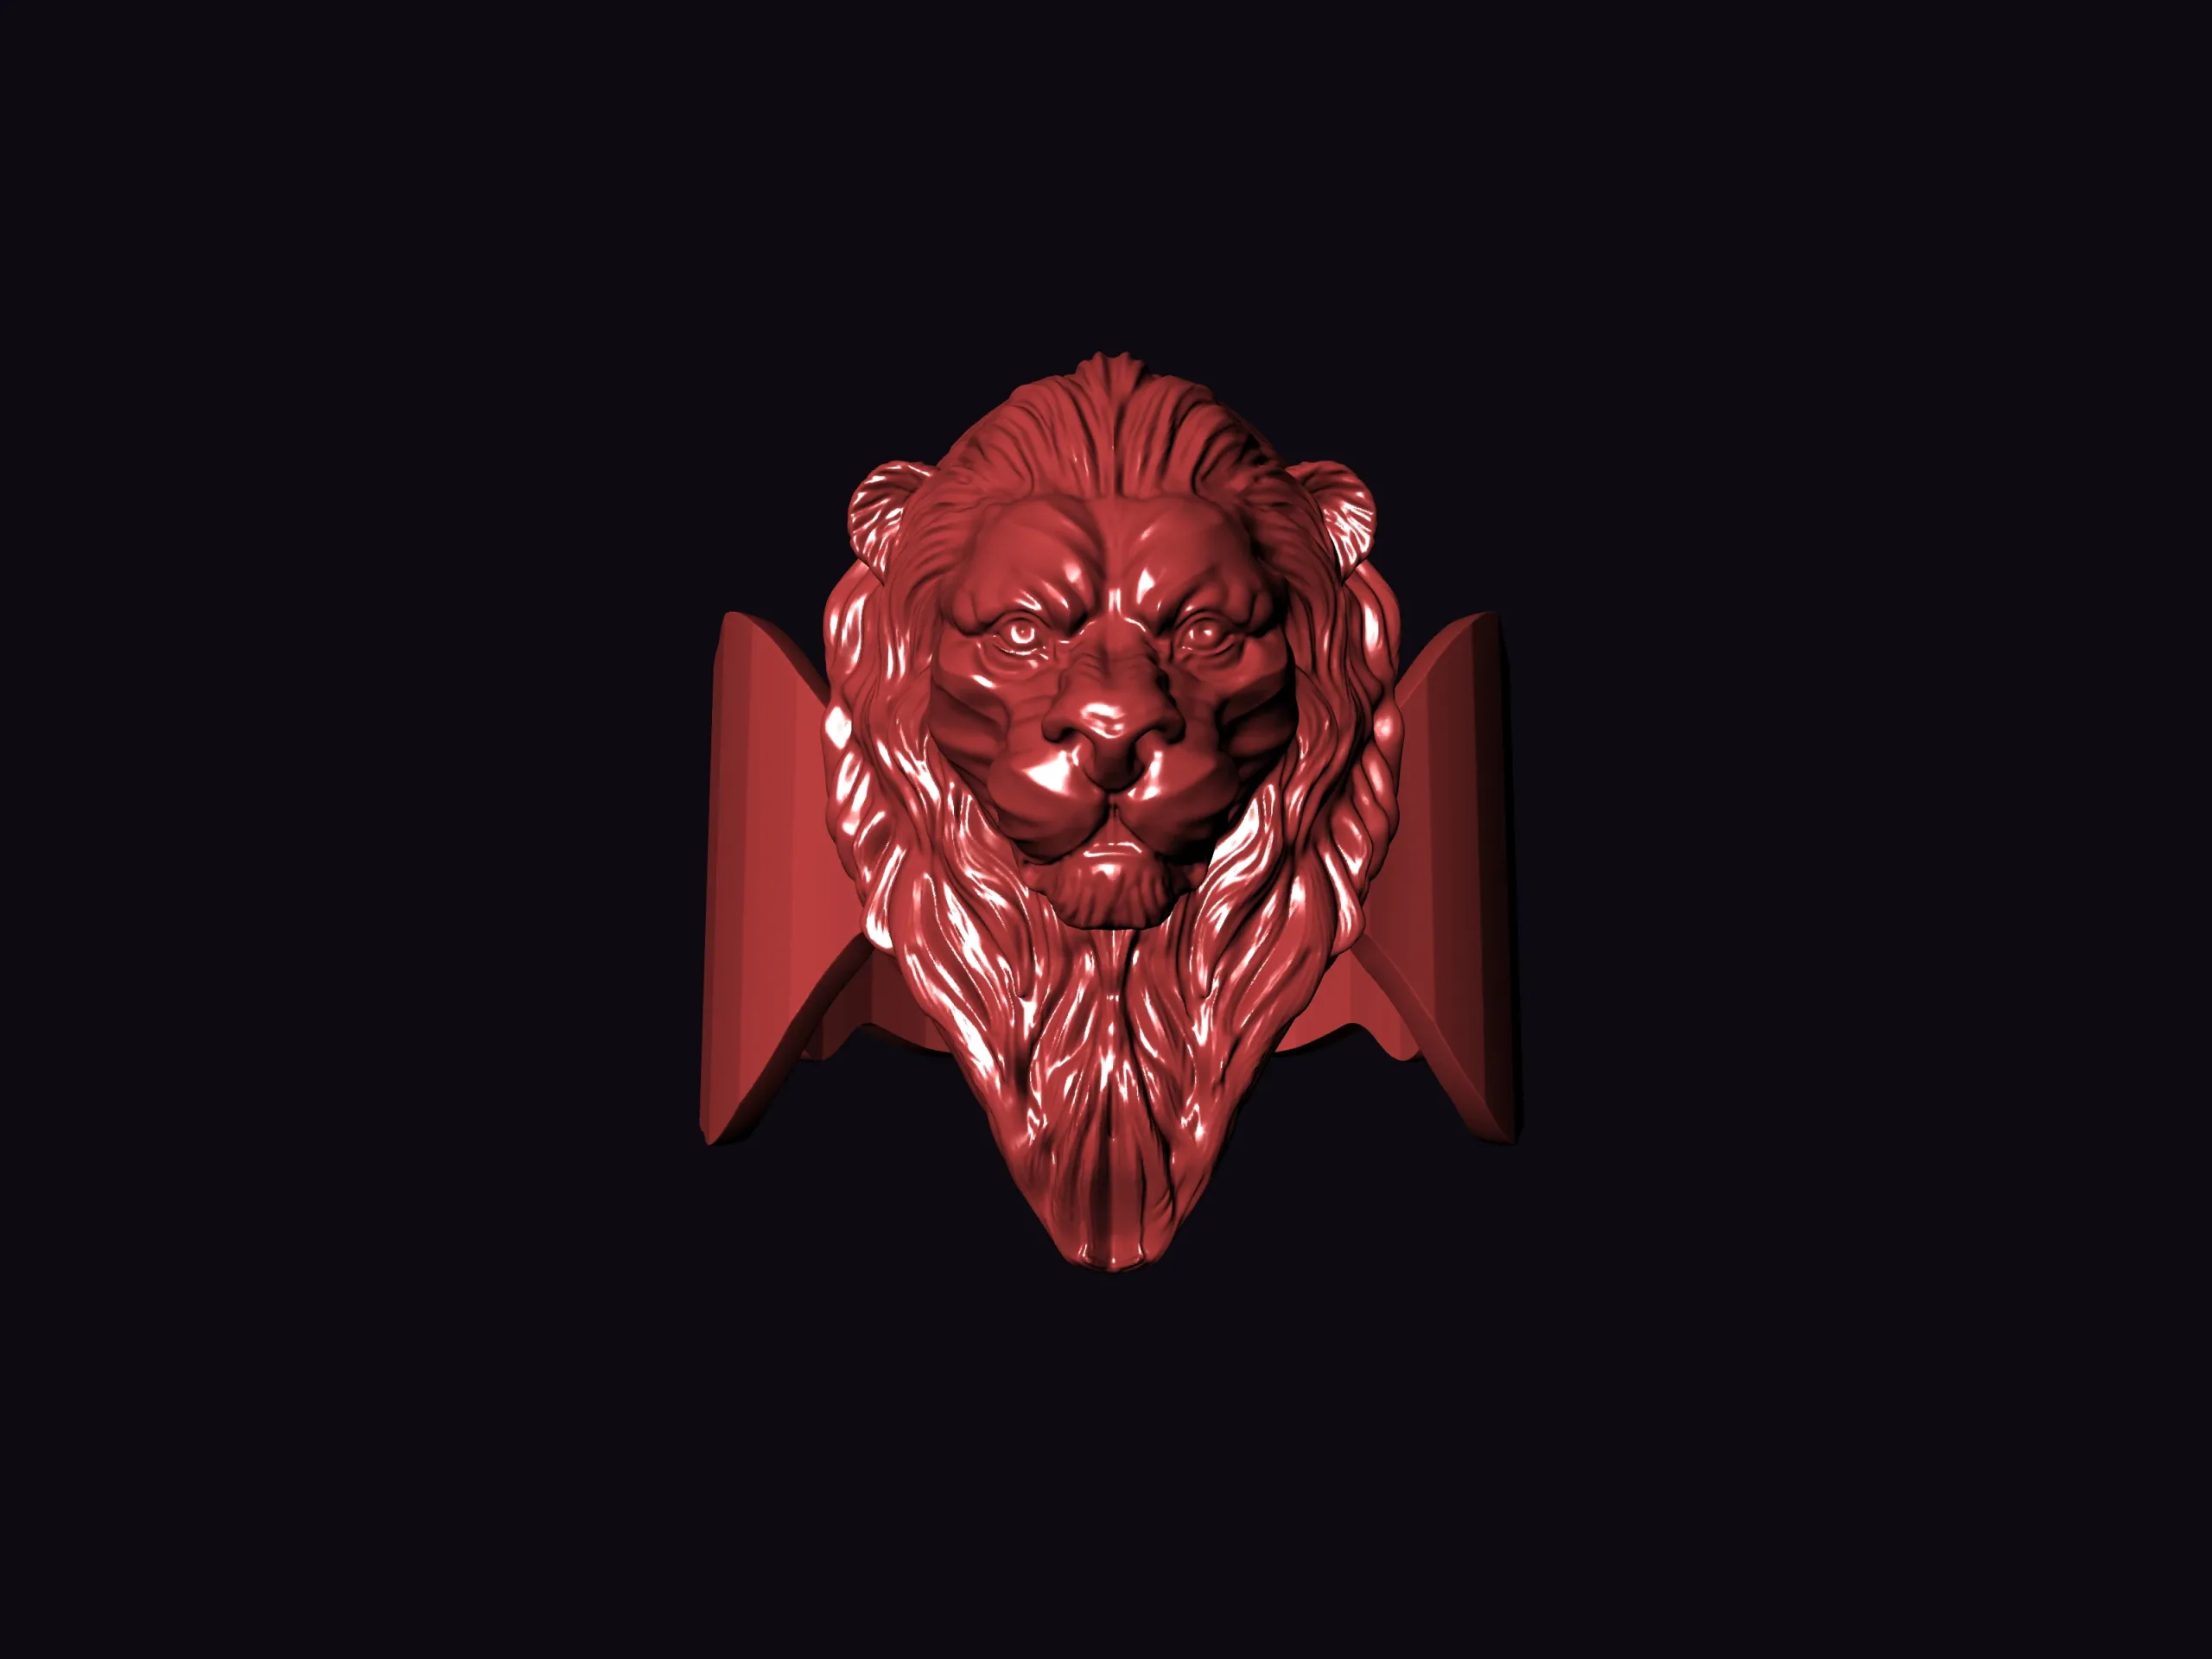 Fierce Lion ring